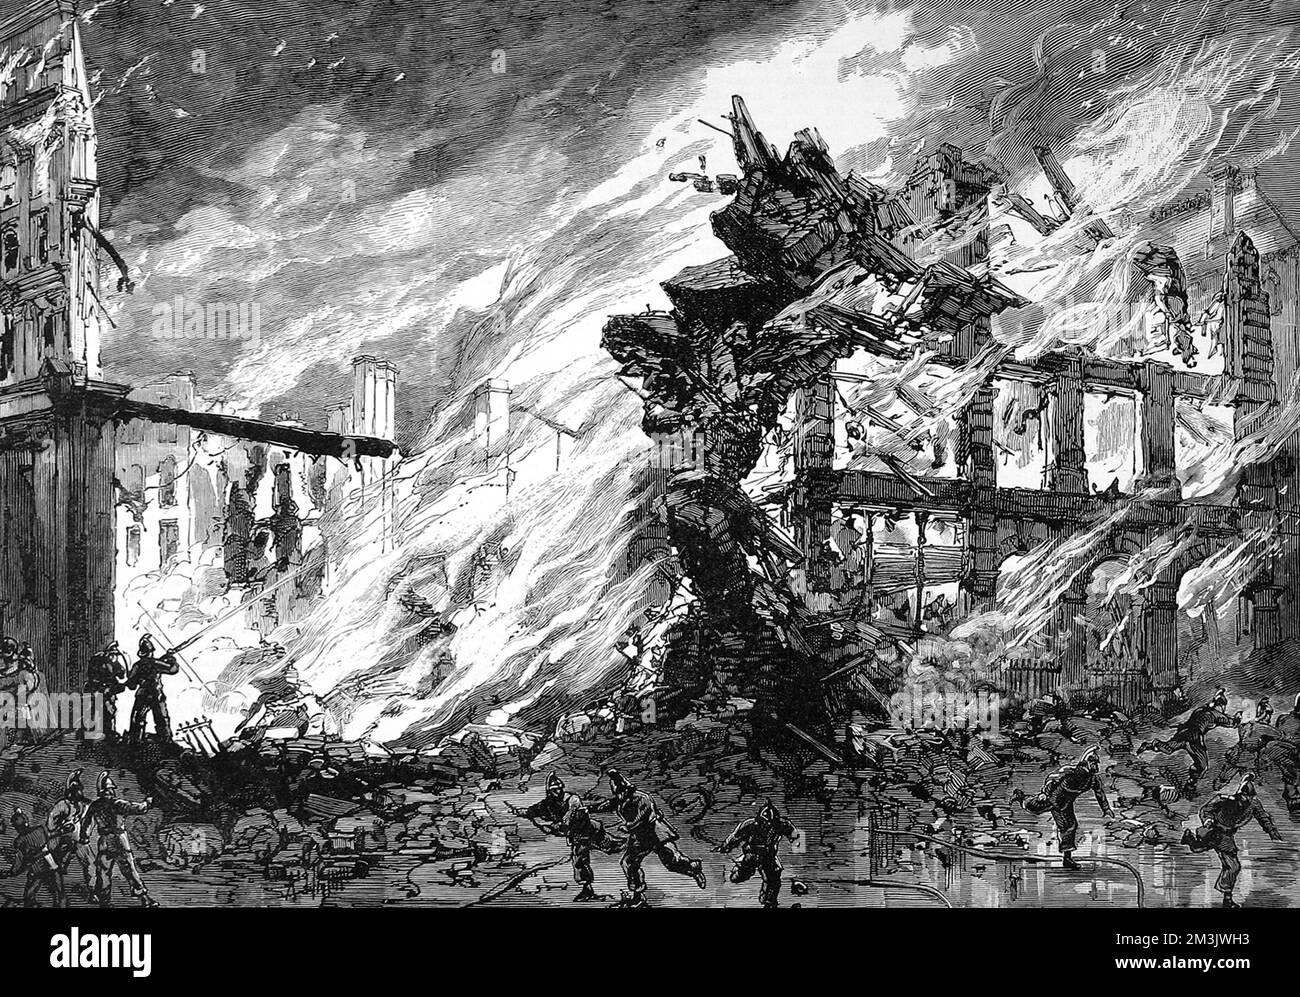 Ein großes Gebäude in Clerkenwell stürzt ein, da es von Flammen umgeben ist. Feuerwehrmänner in 1880er-Uniform versuchen, das Feuer mit Wasserrohren zu überwältigen. Datum: 1885 Stockfoto